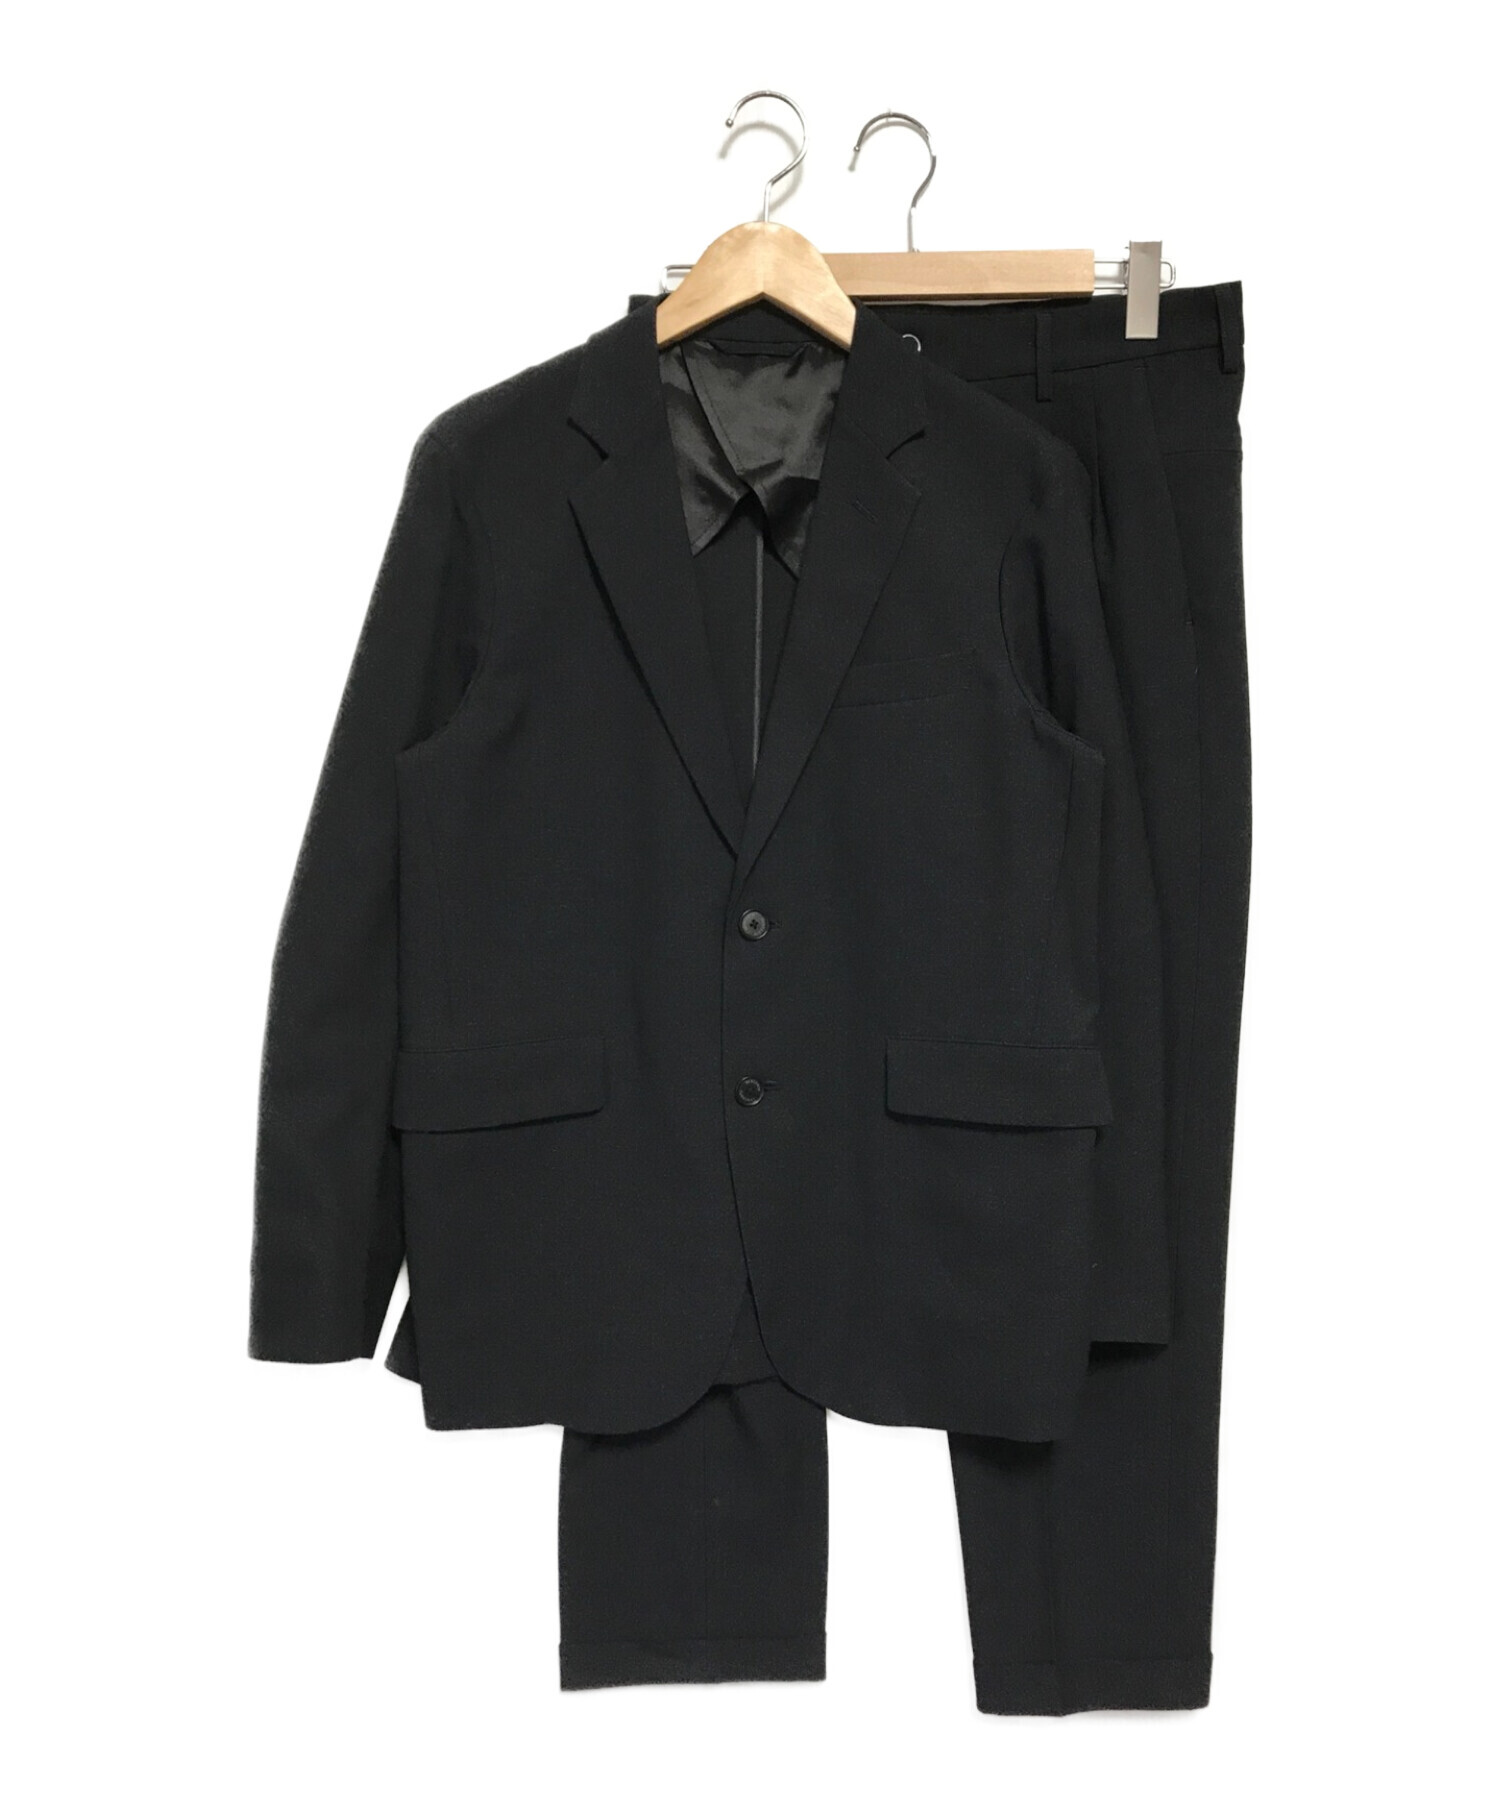 DESCENTE (デサント) セットアップスーツ ブラック サイズ:S